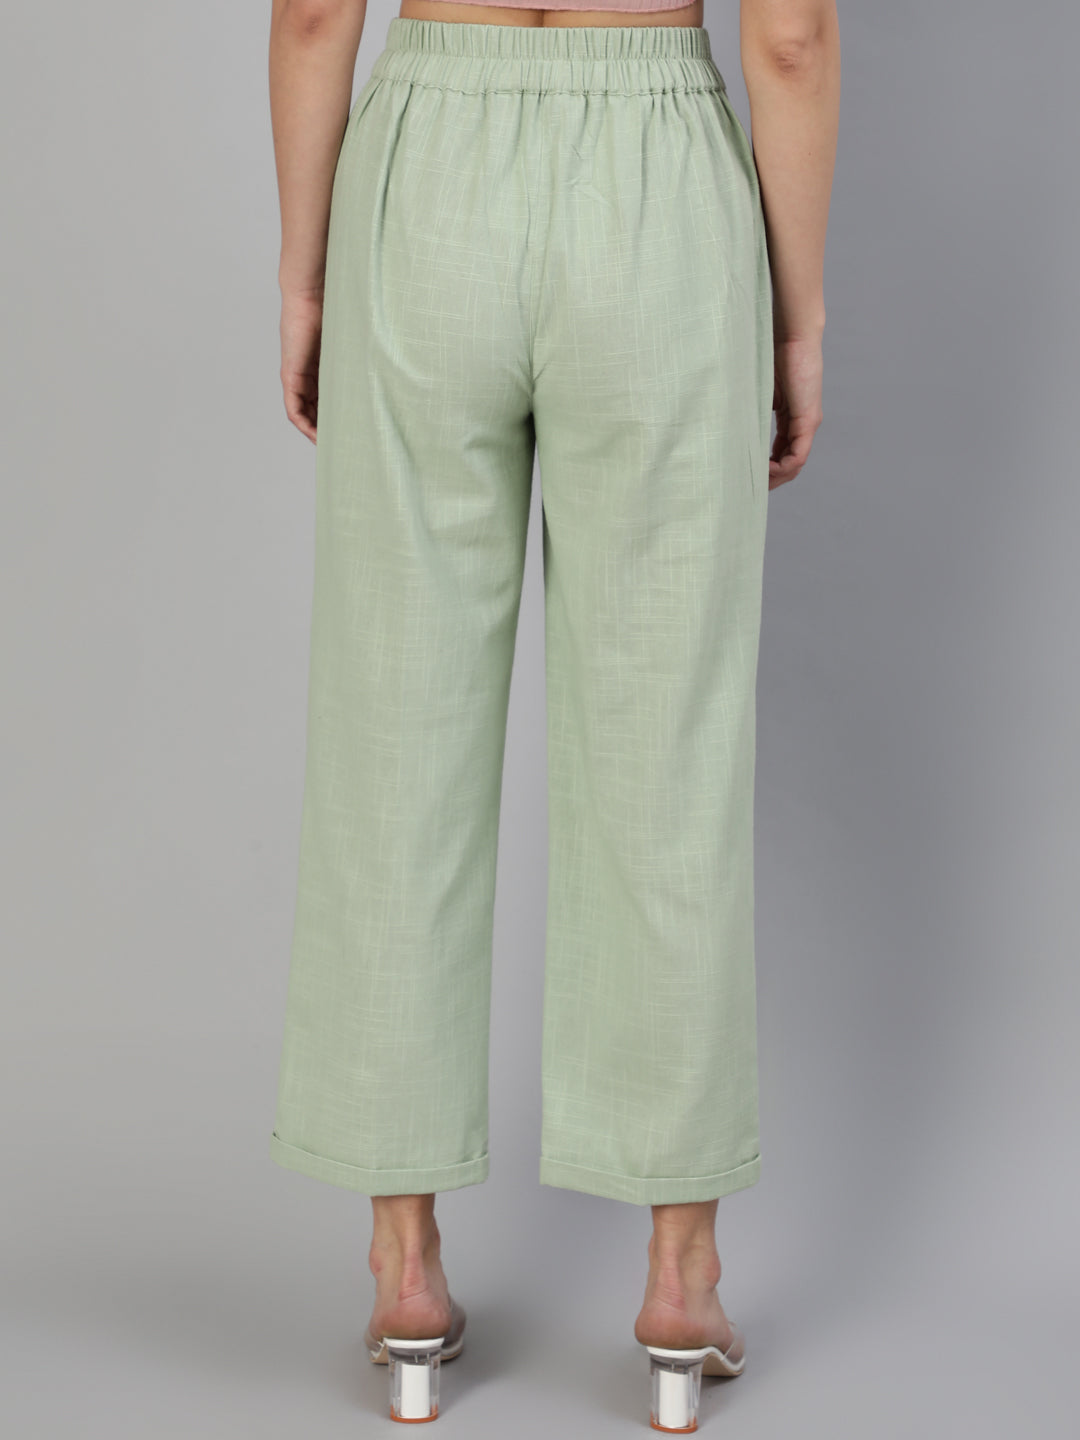 Shop cotton casual pants for ladies